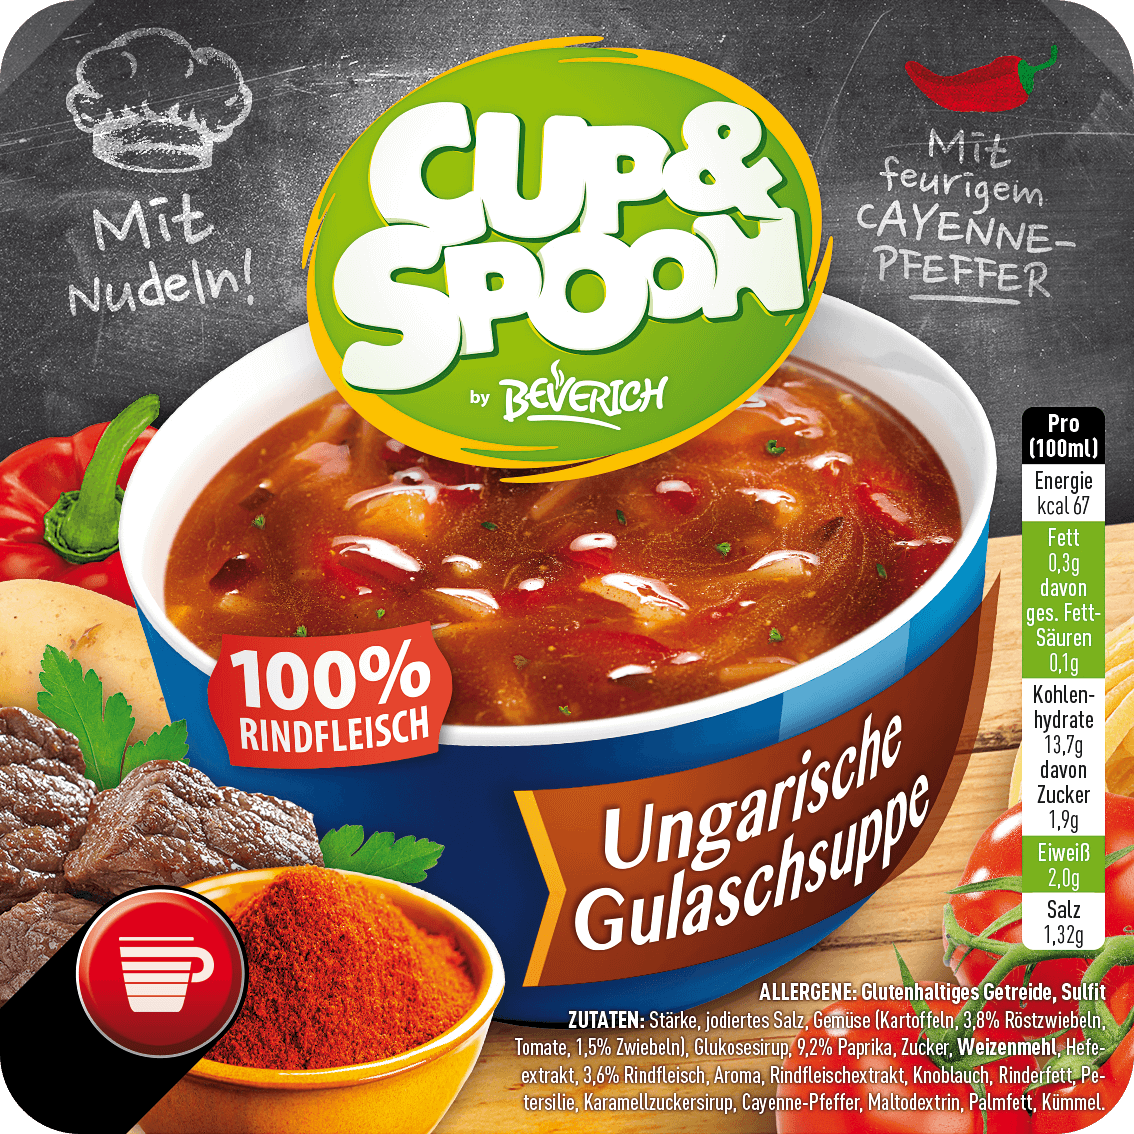 Cup&Spoon - Ungarische Gulaschsuppe (mit Nudeln)